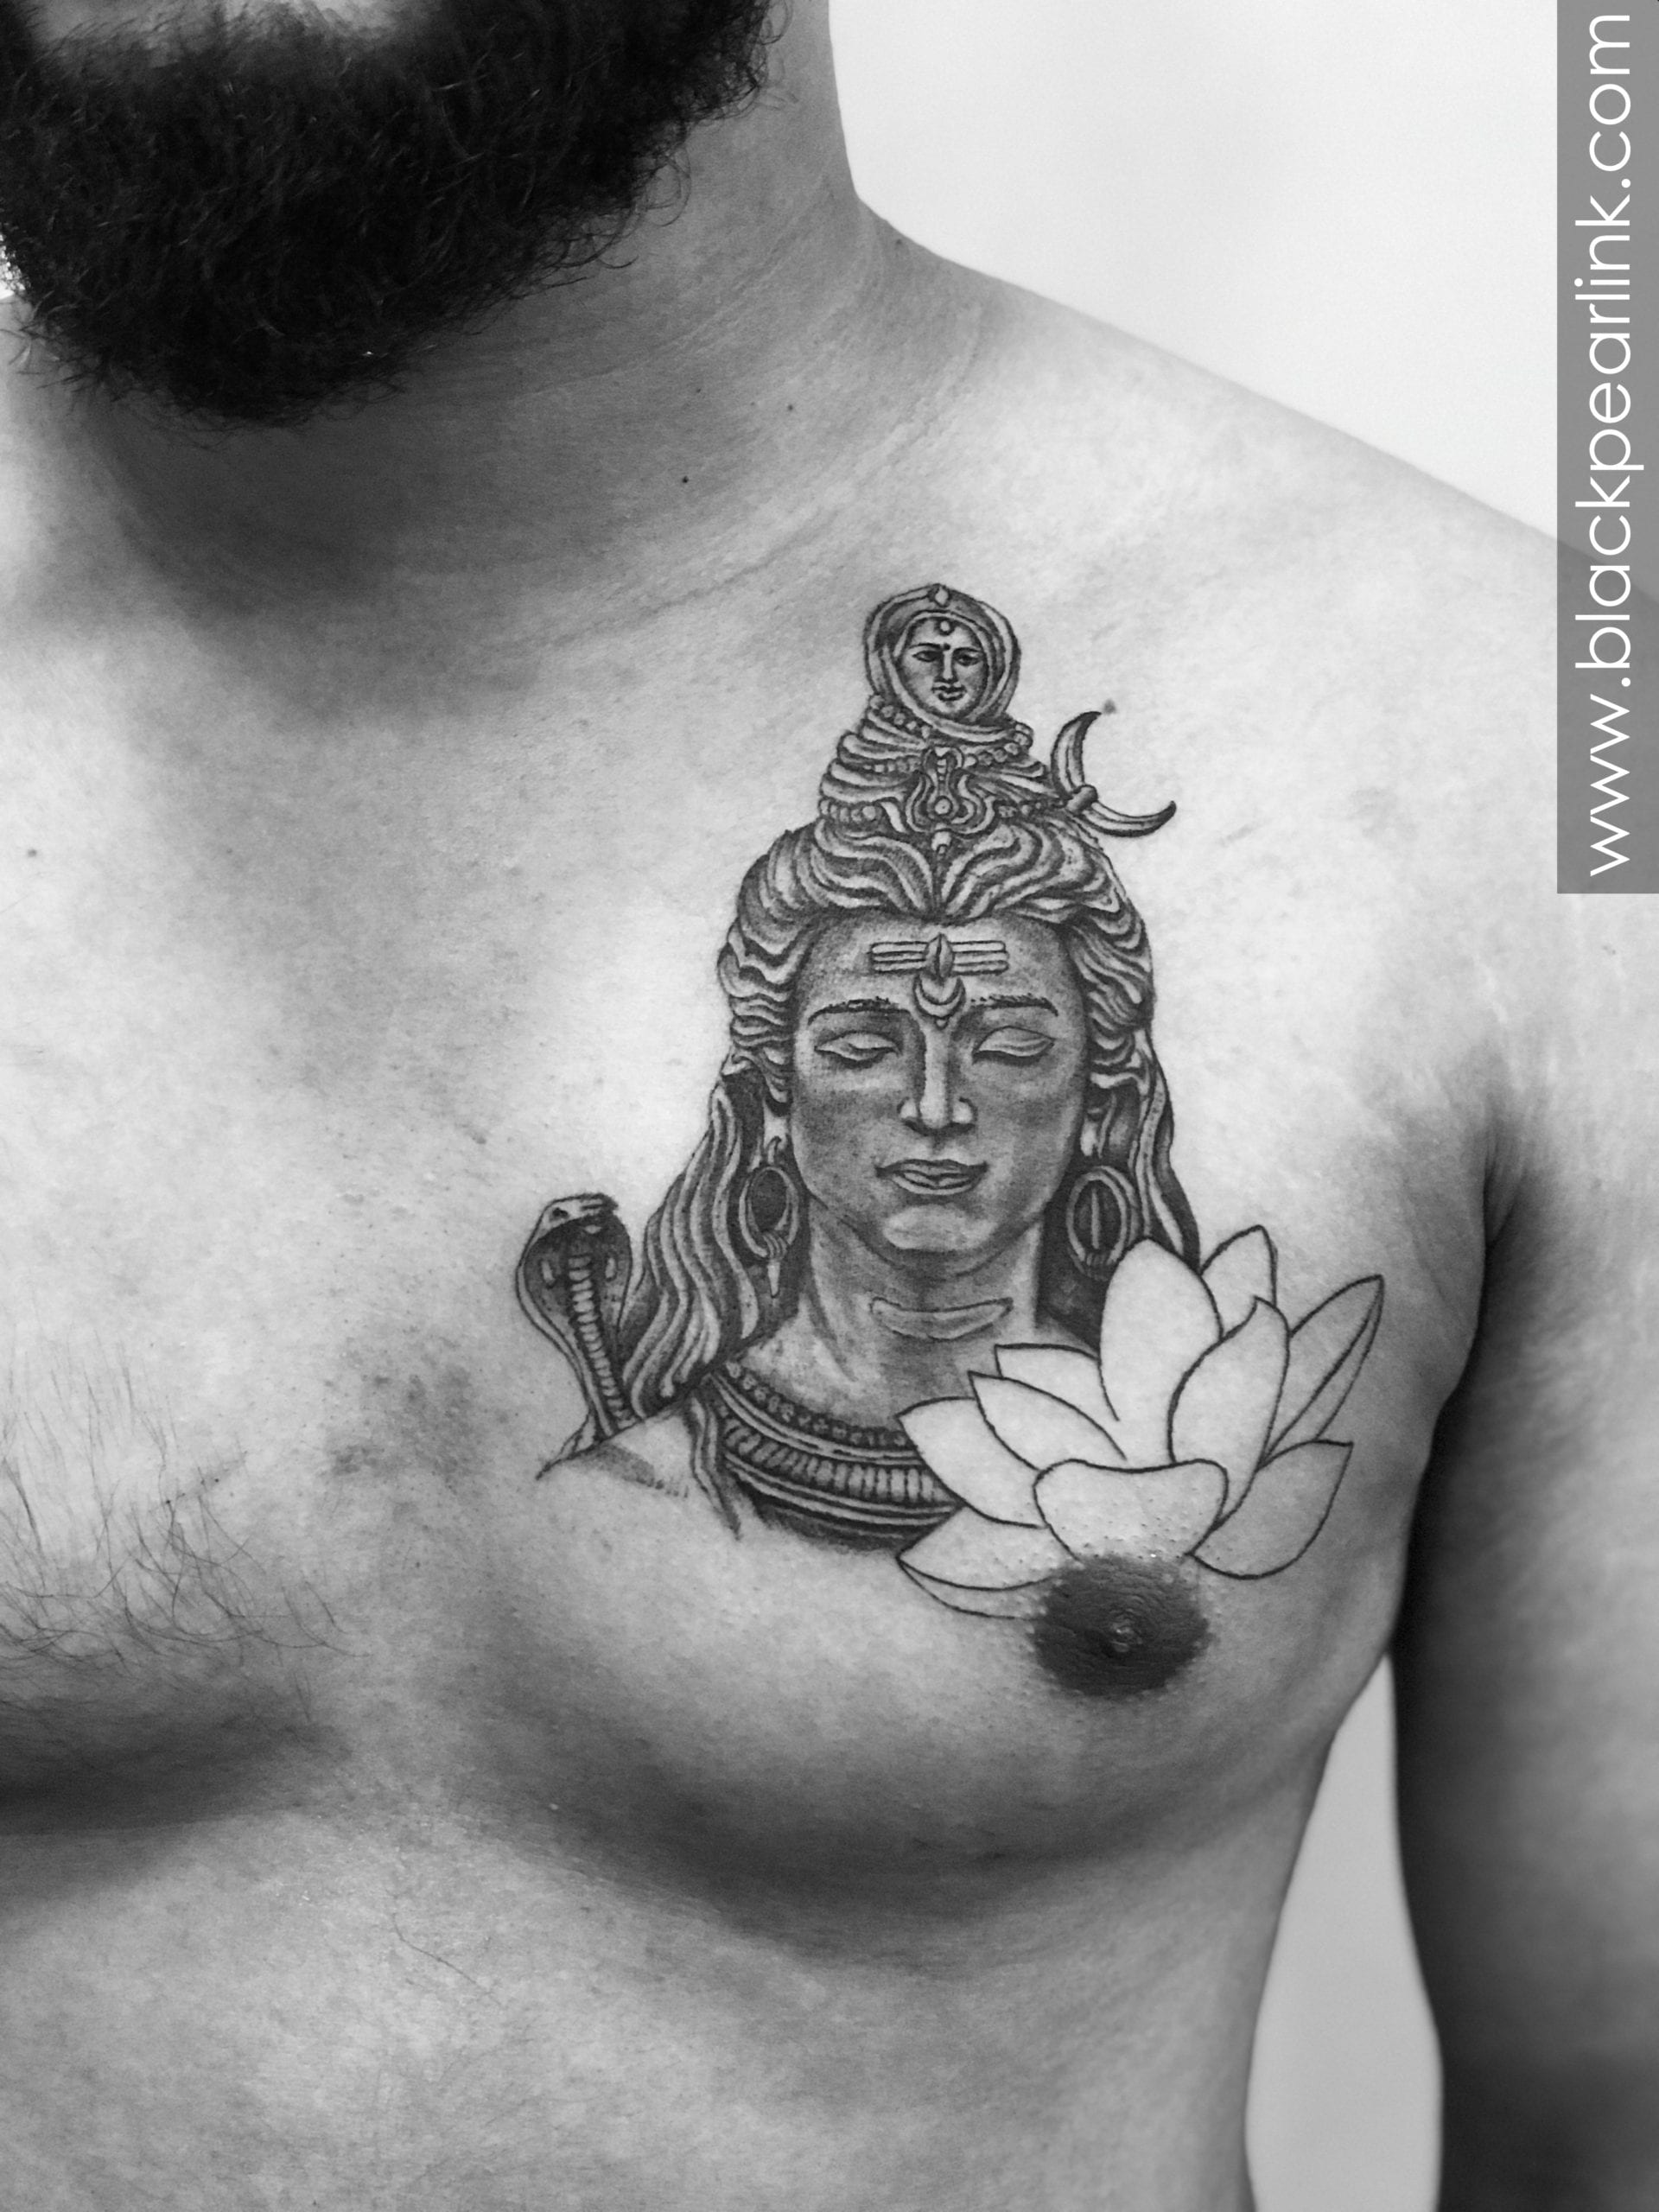 Voorkoms Shiva Tattoo Men Women Waterproof Temporary Body Tattoo :  Amazon.in: Beauty